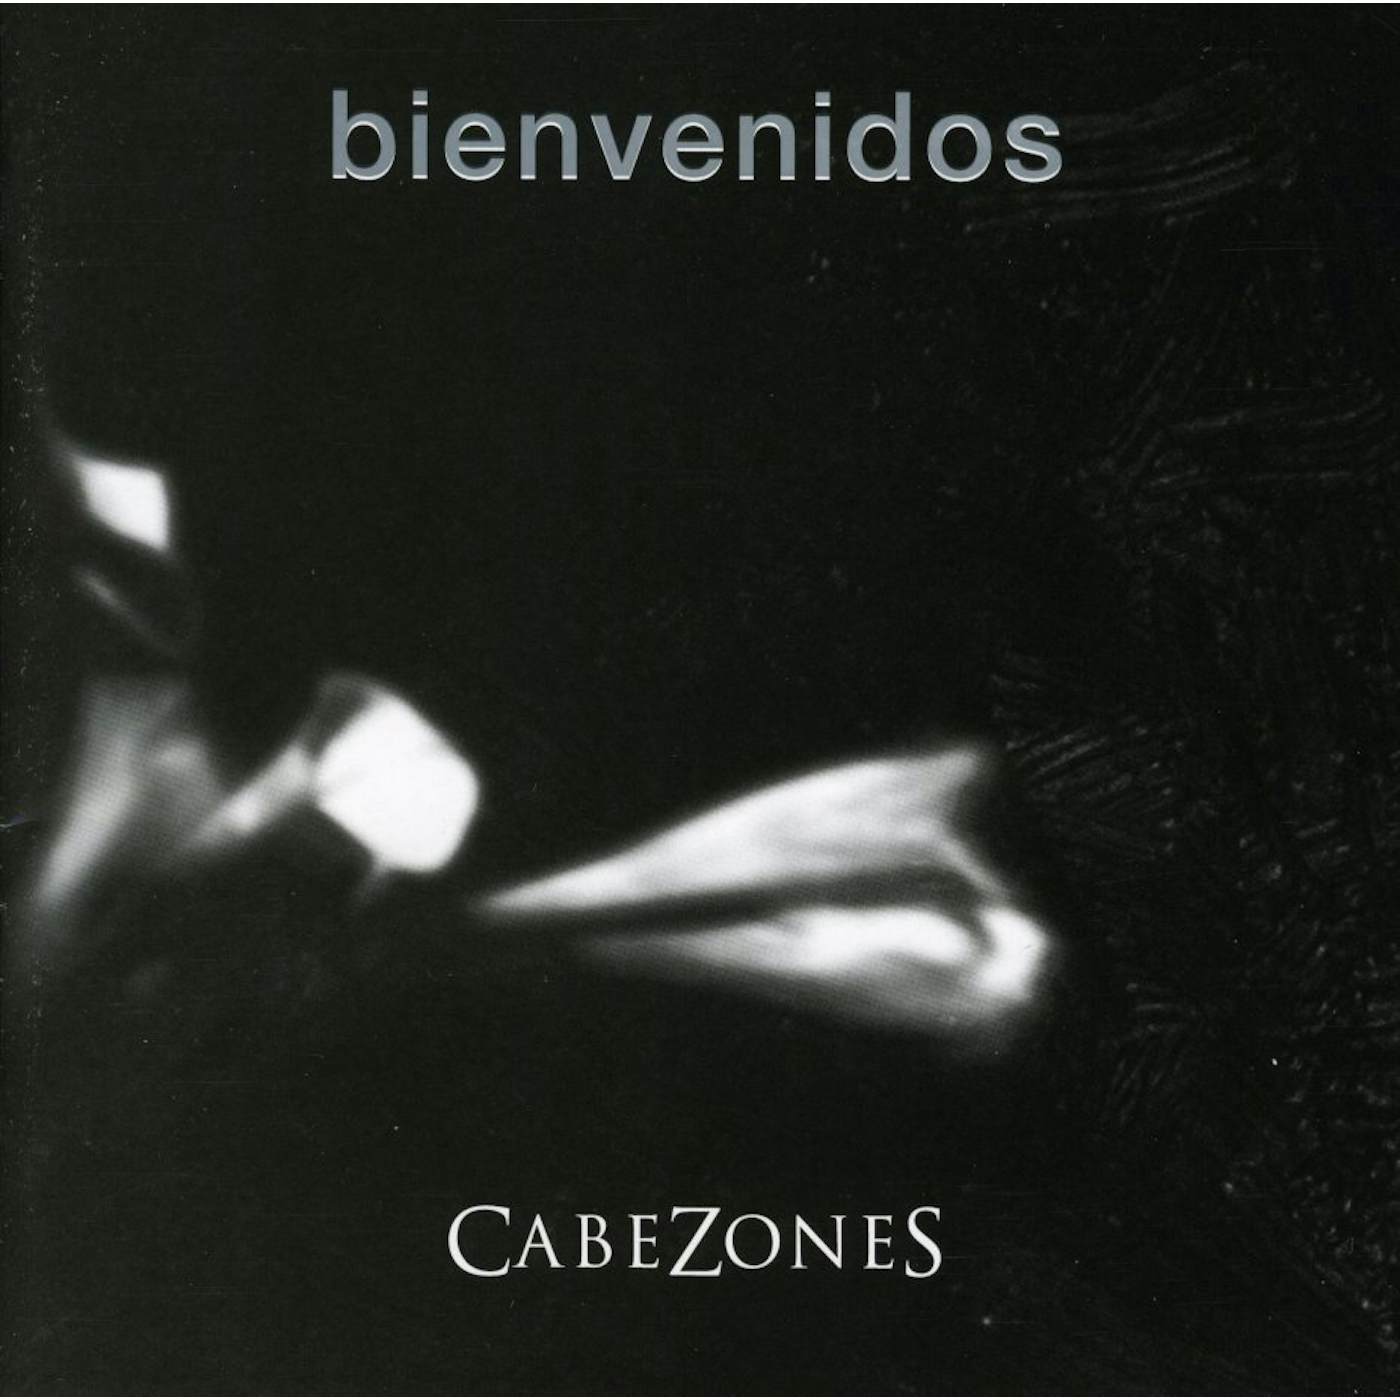 Cabezones BIENVENIDOS + OBRAS VIVO 2006 CD